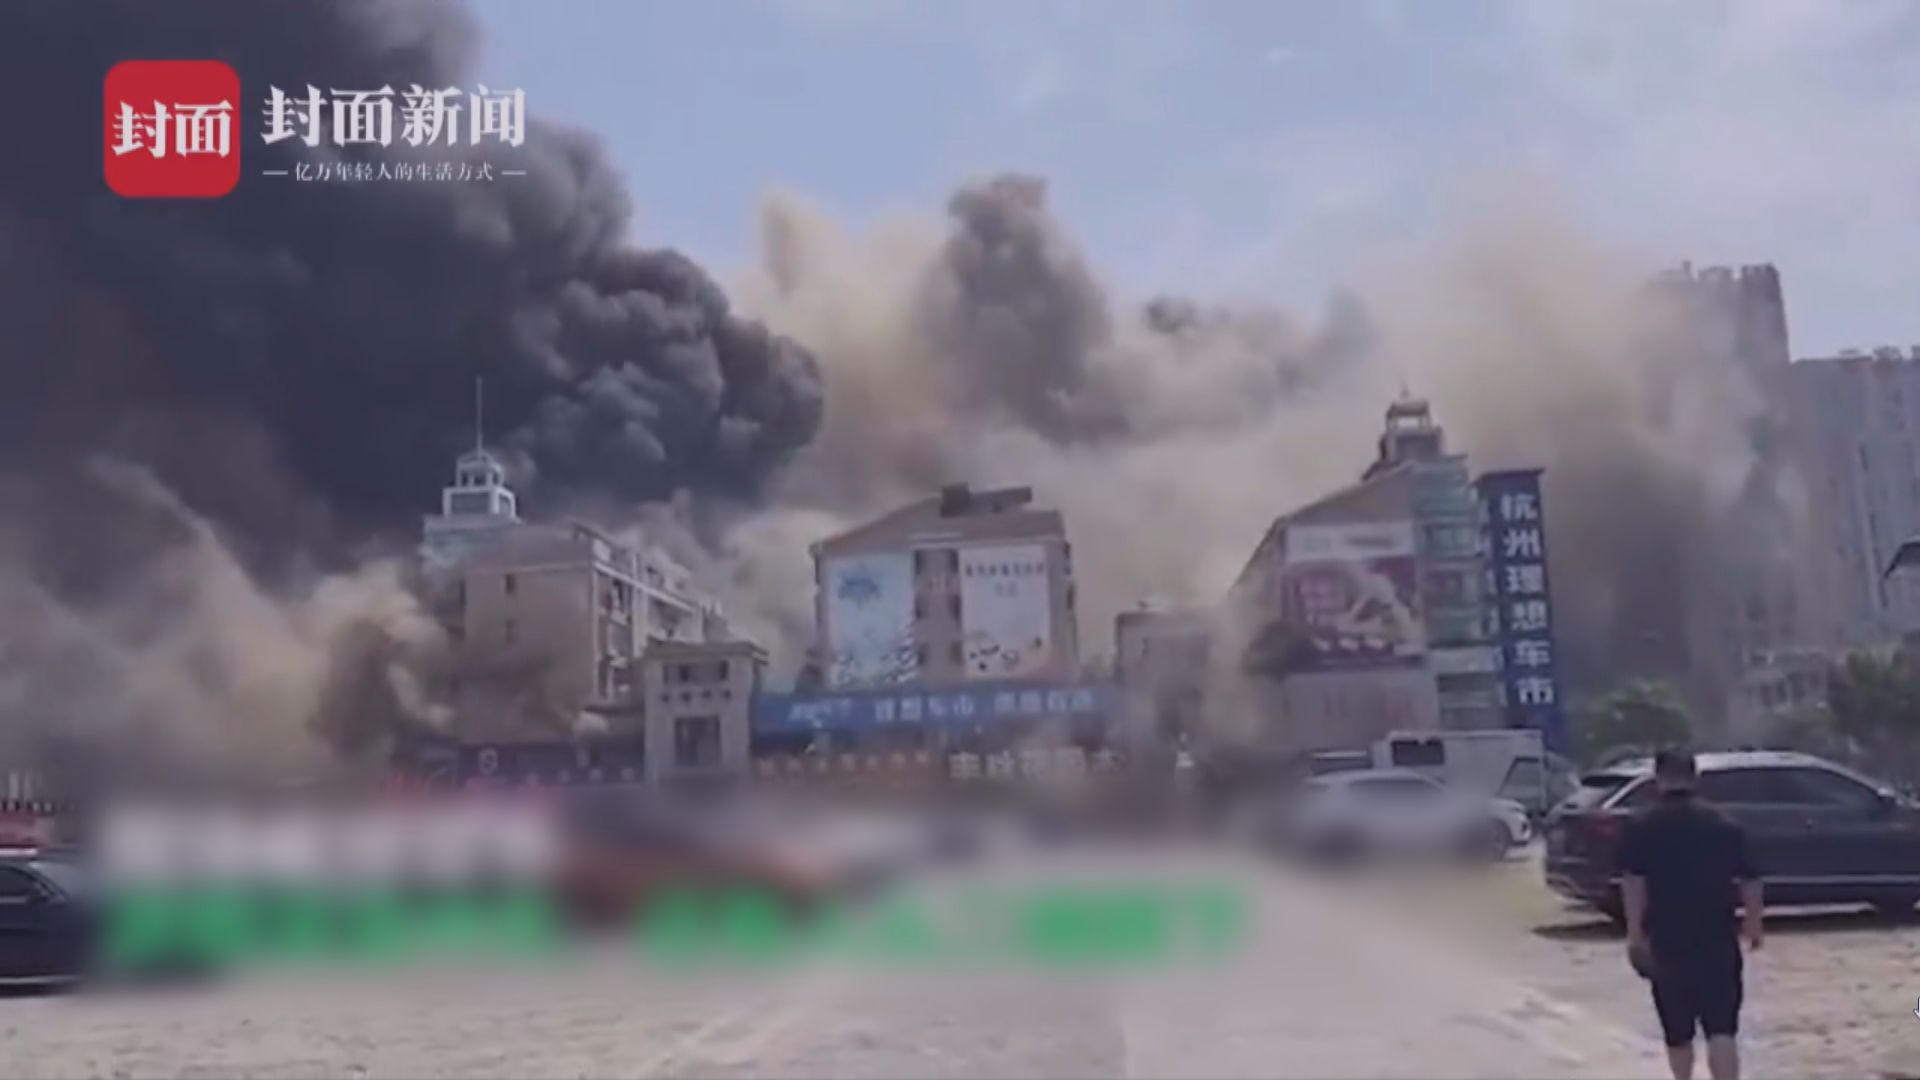 杭州冰雪大世界發生火災　兩人從二樓跳下逃生